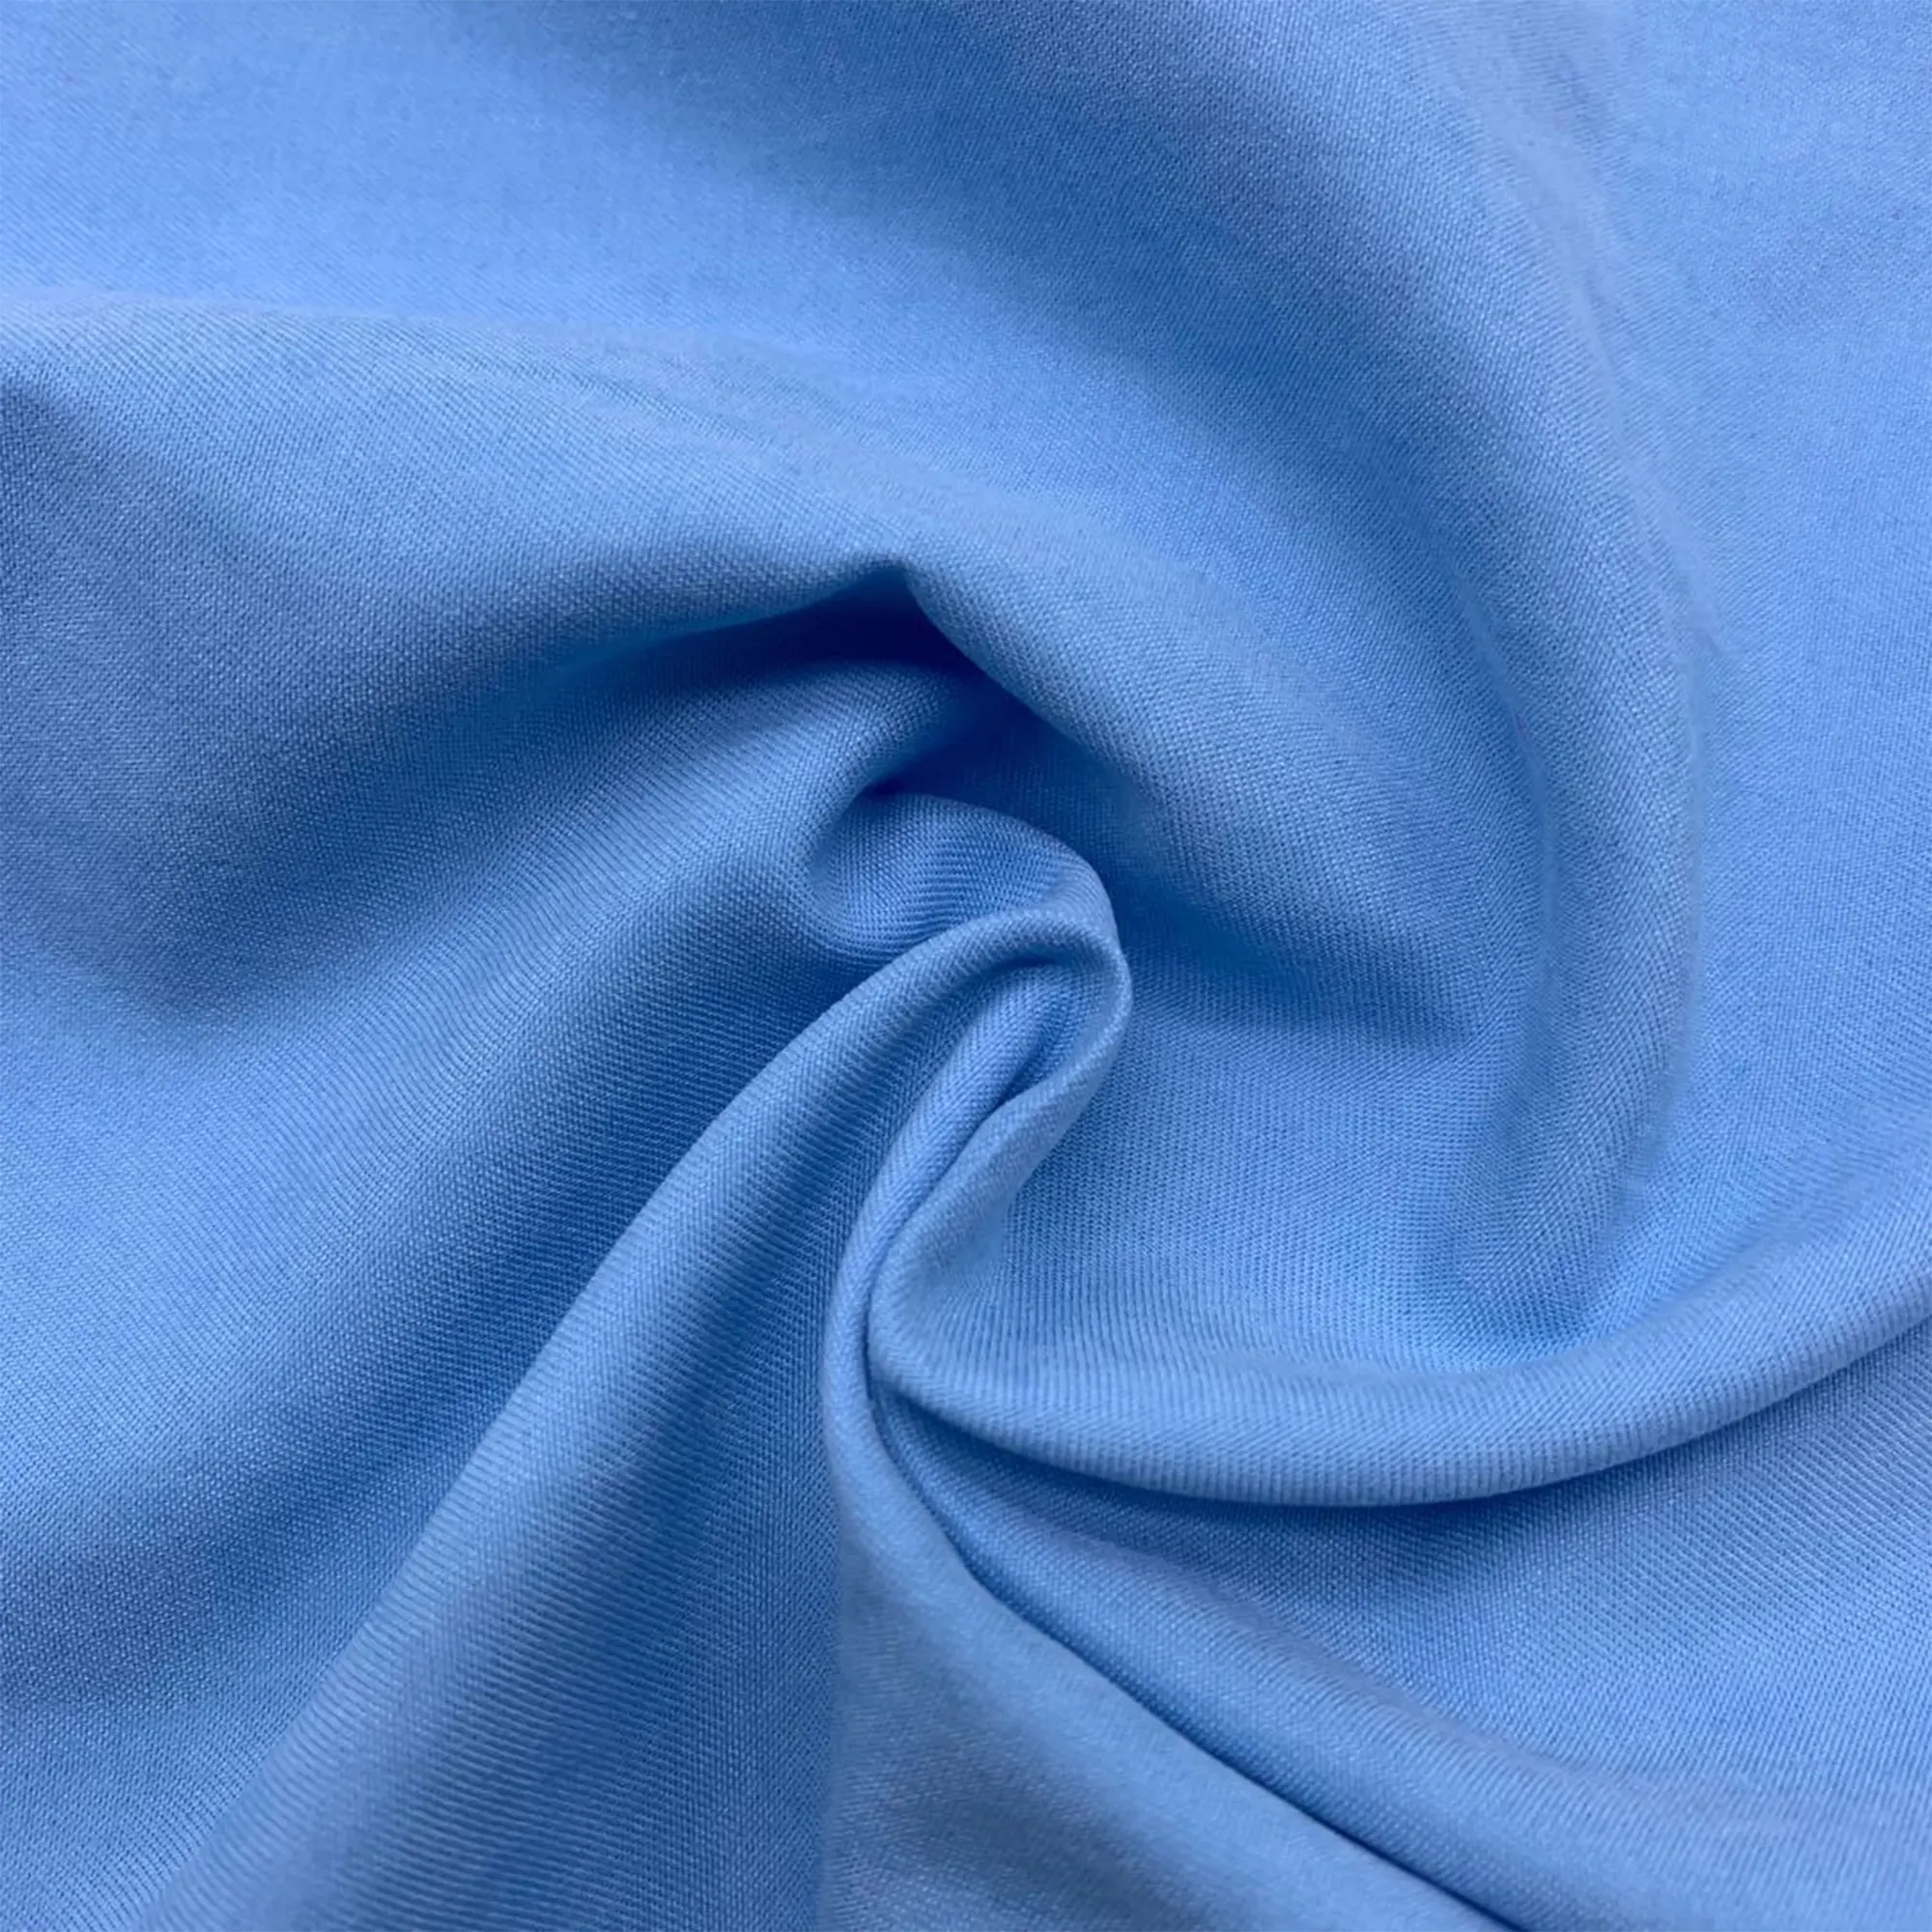 Полиэстеровая ткань из микрофибры отбеливатель белый полиэстер Домашний текстиль комплект постельного белья занавес ткань для одежды